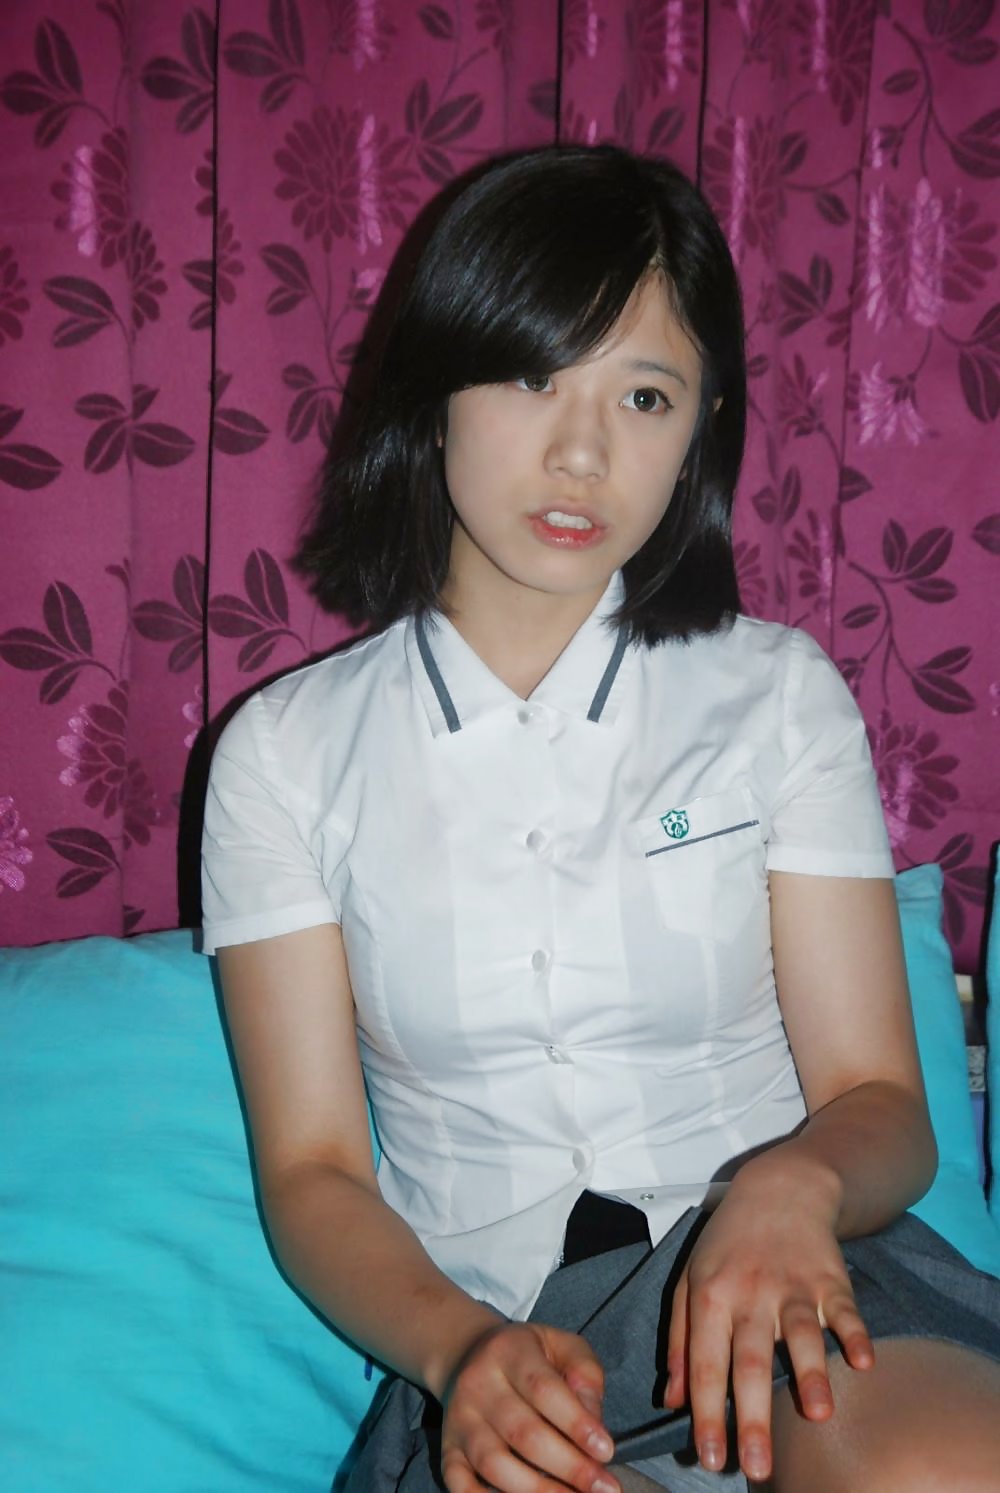 Amateur Asians Korean Teen 8736 Hot Sex Picture pic